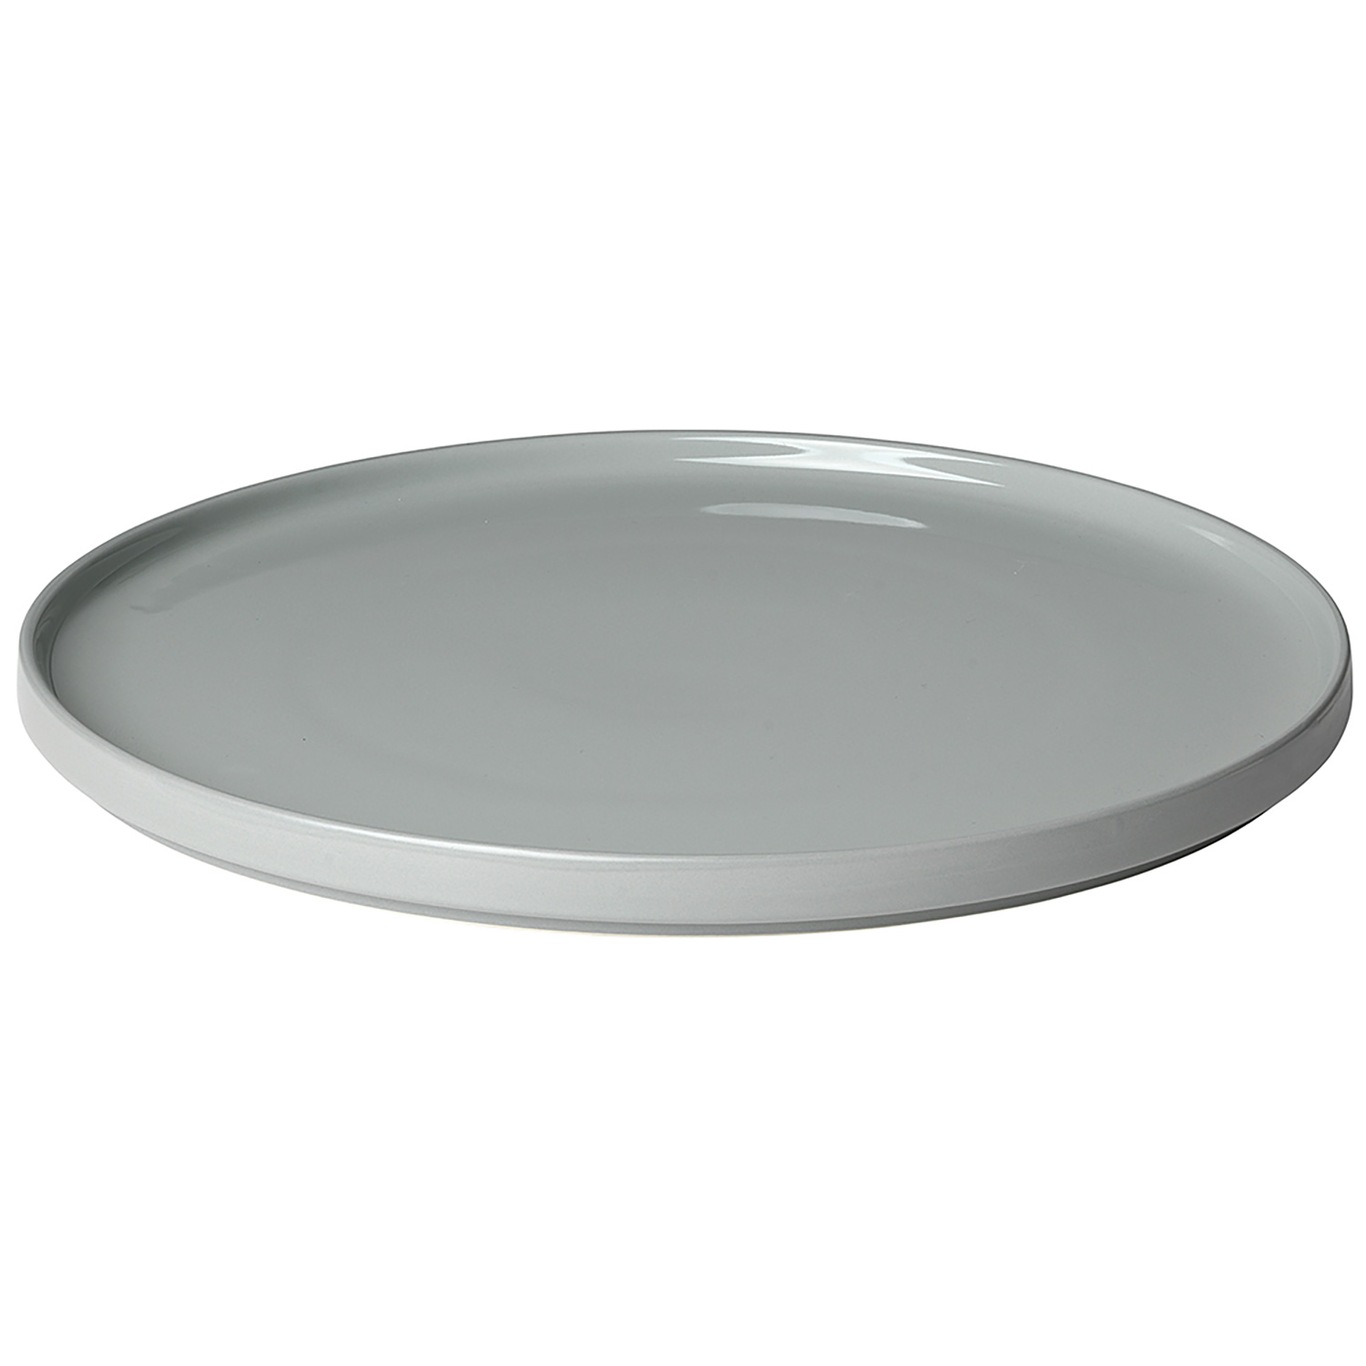 Pilar Serving Dish 35 cm, Mirage Grey